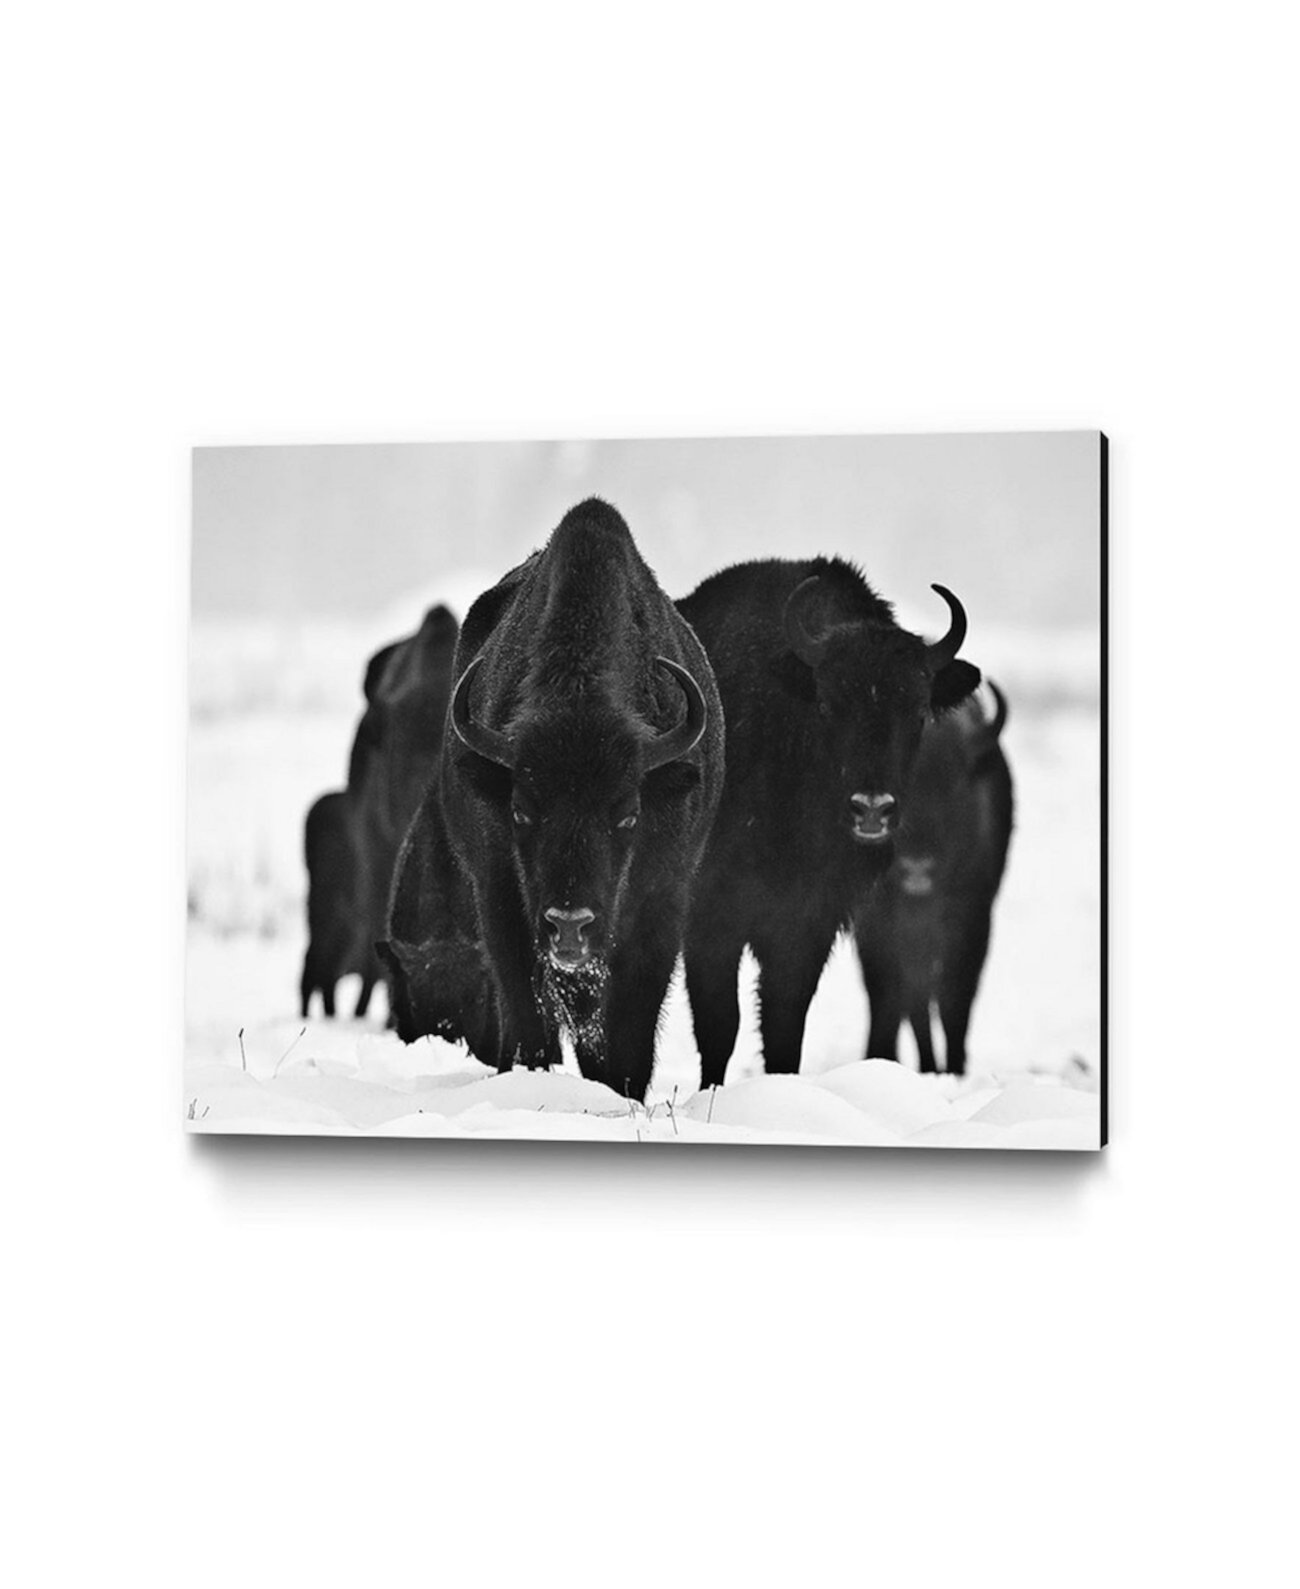 36 "x 24" Печать на холсте из музея европейских бизонов Giant Art